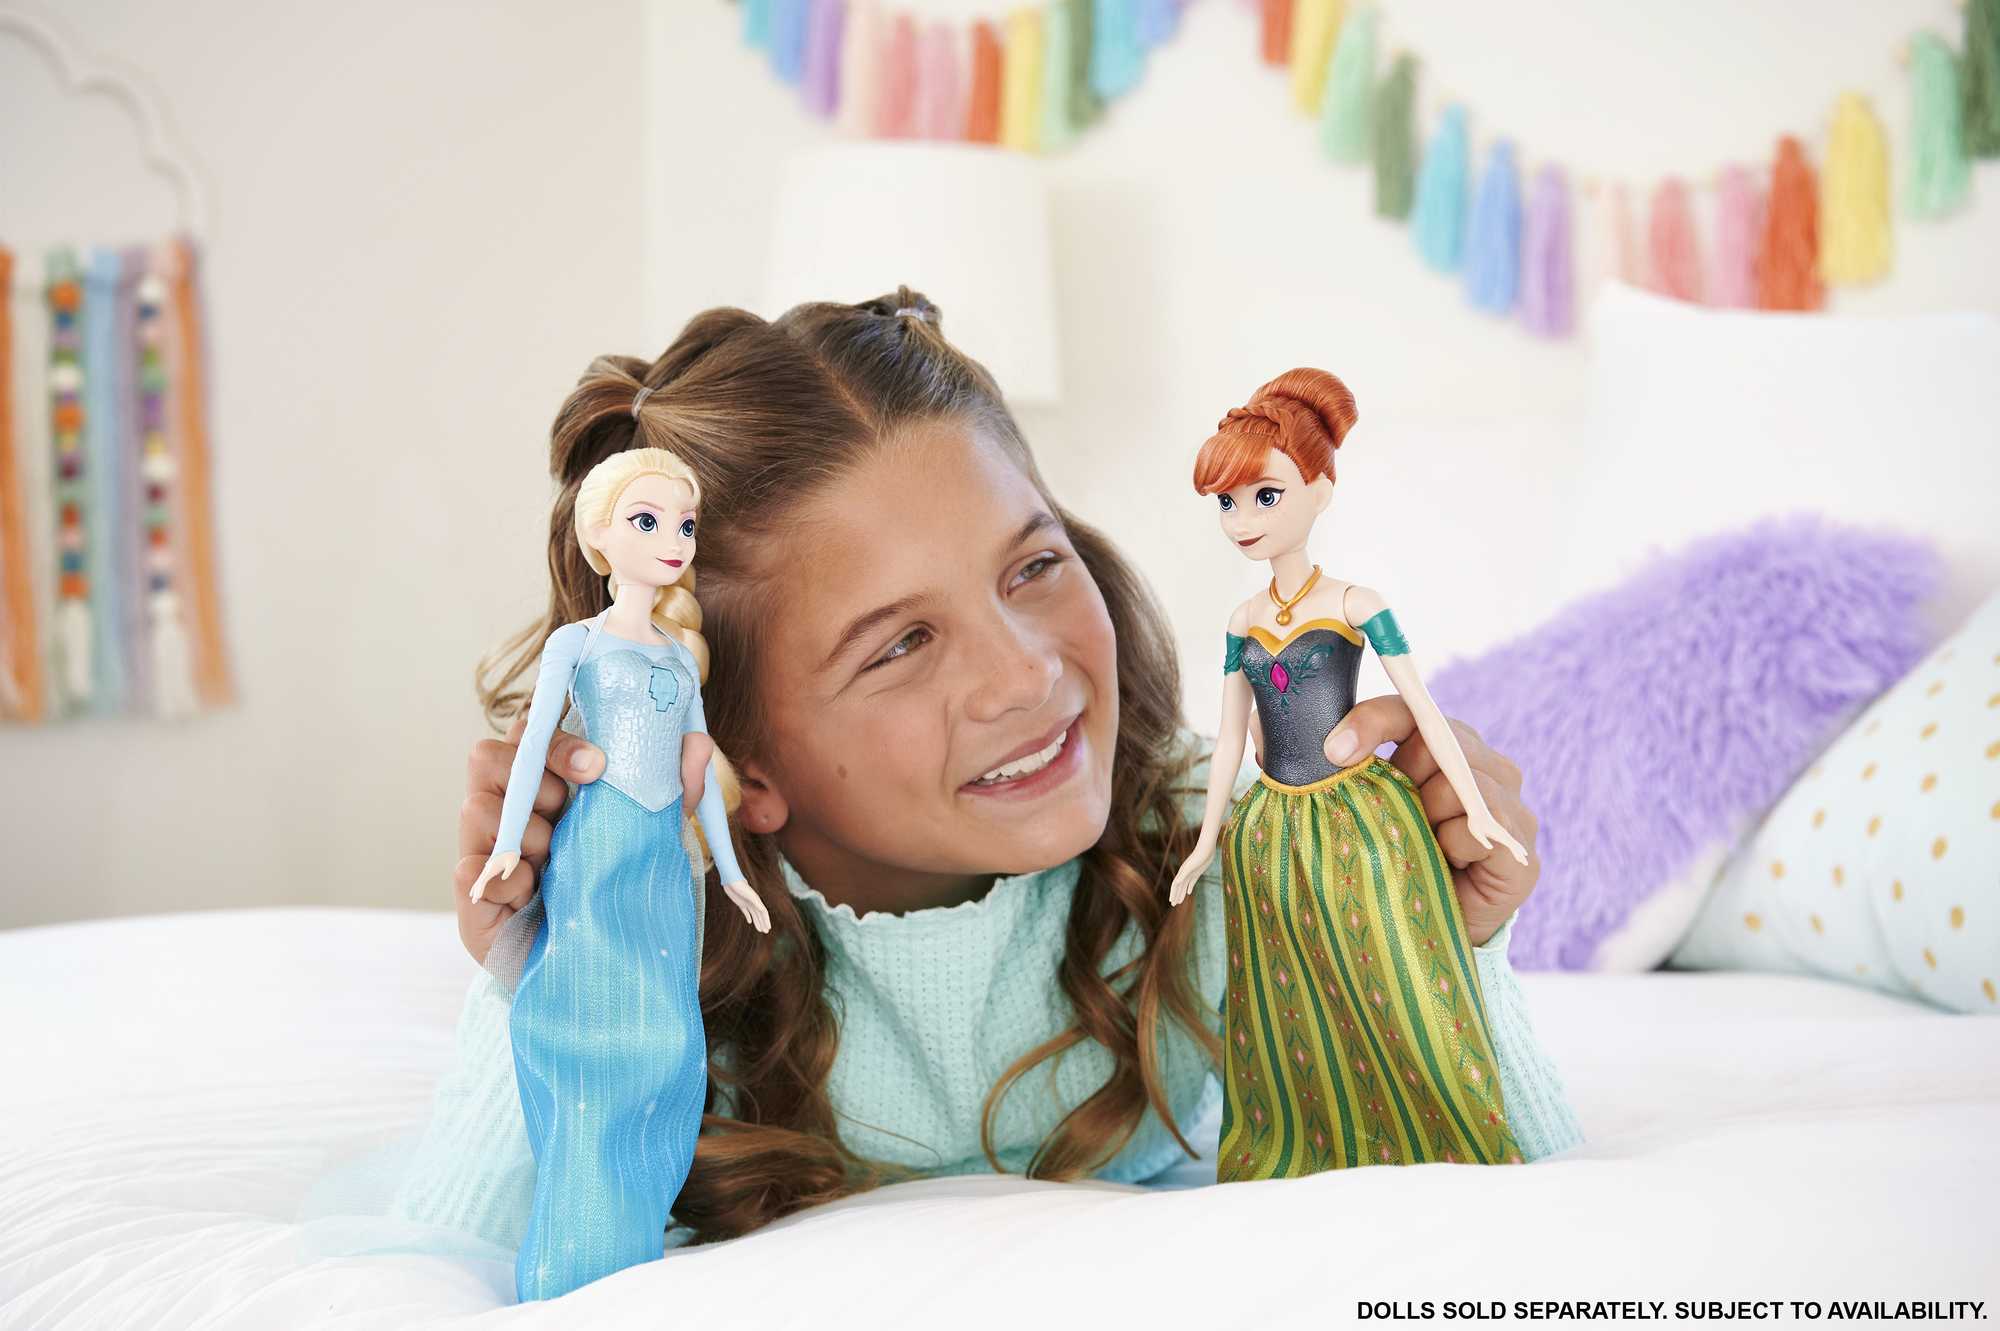 Poupée Disney Frozen La Reine des Neiges 2 Elsa chantante en tenue